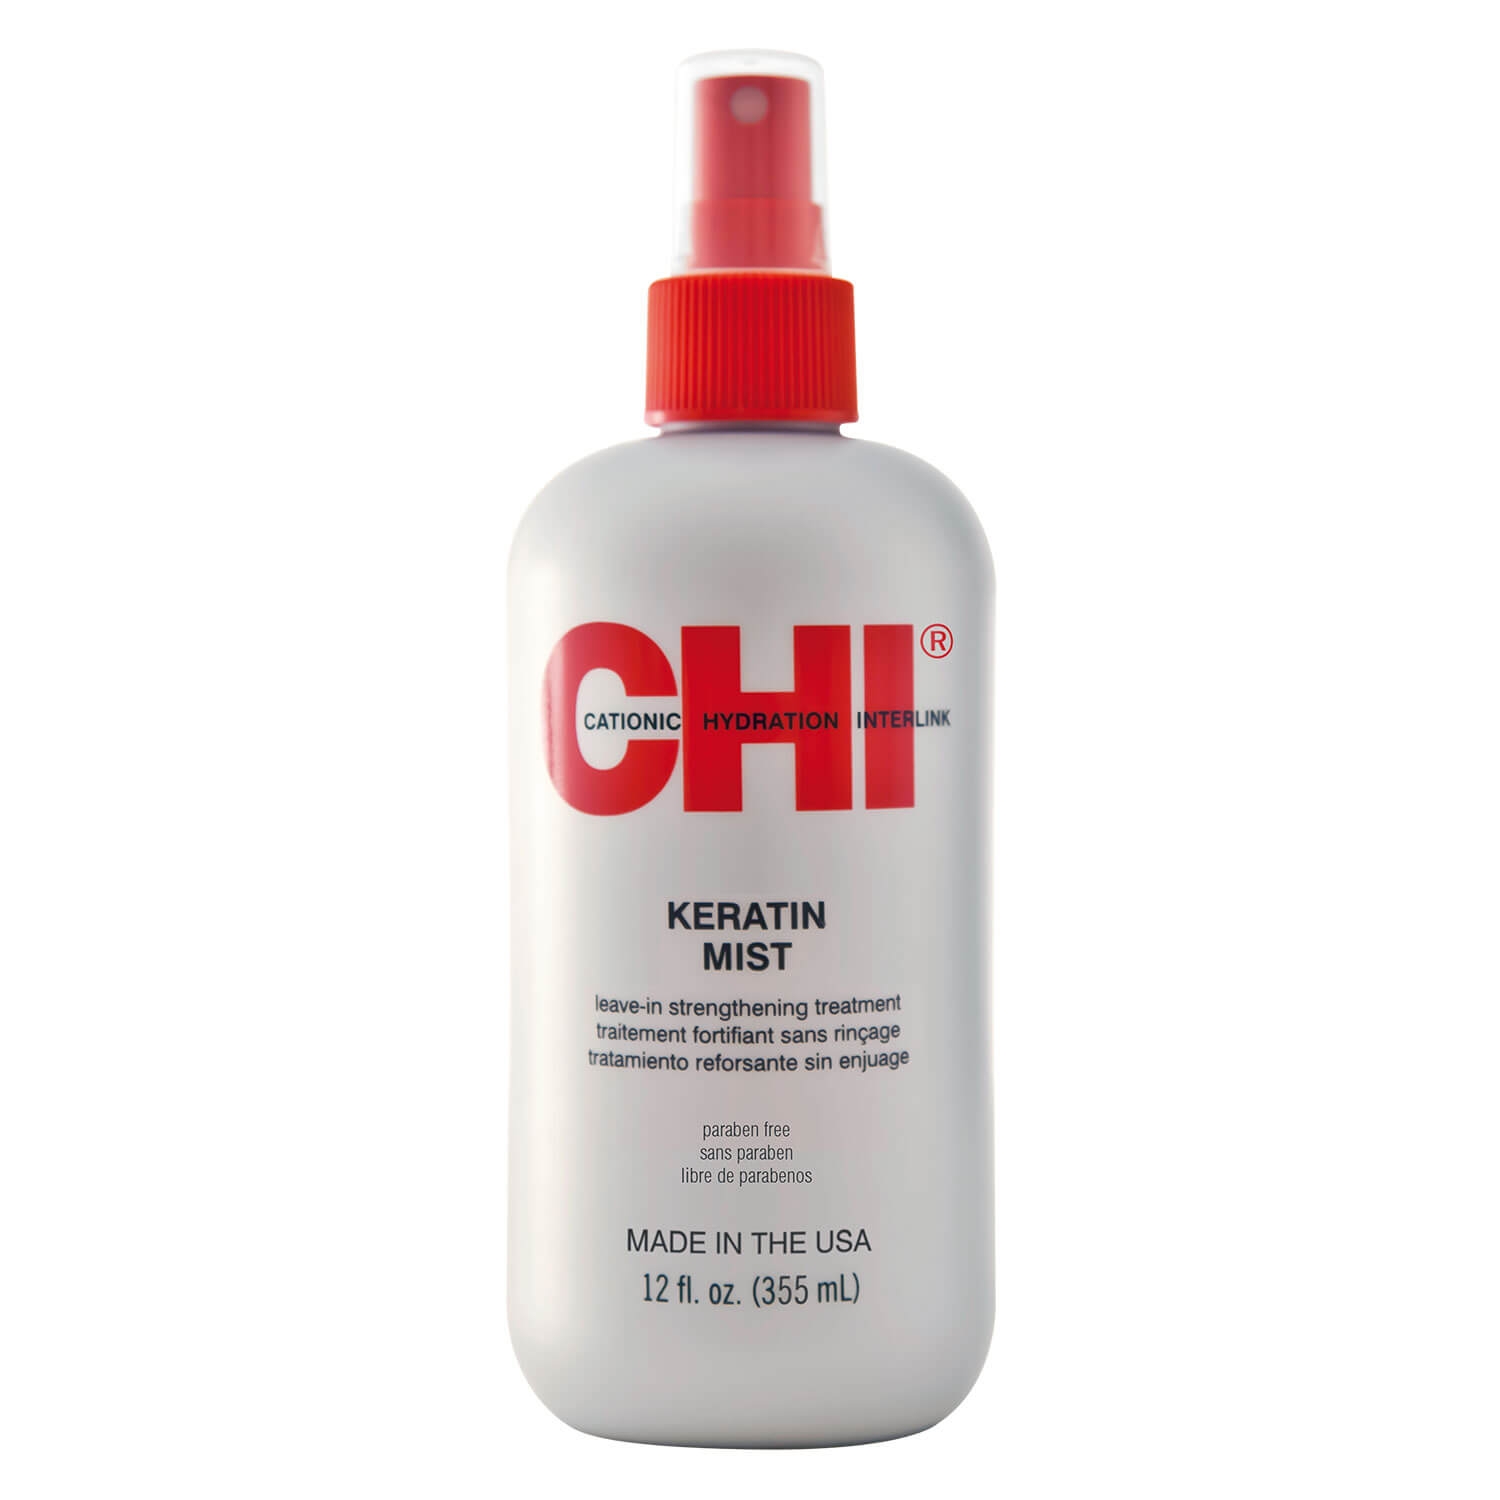 Produktbild von CHI Infra Repair - Keratin Mist Leave-In Treatment